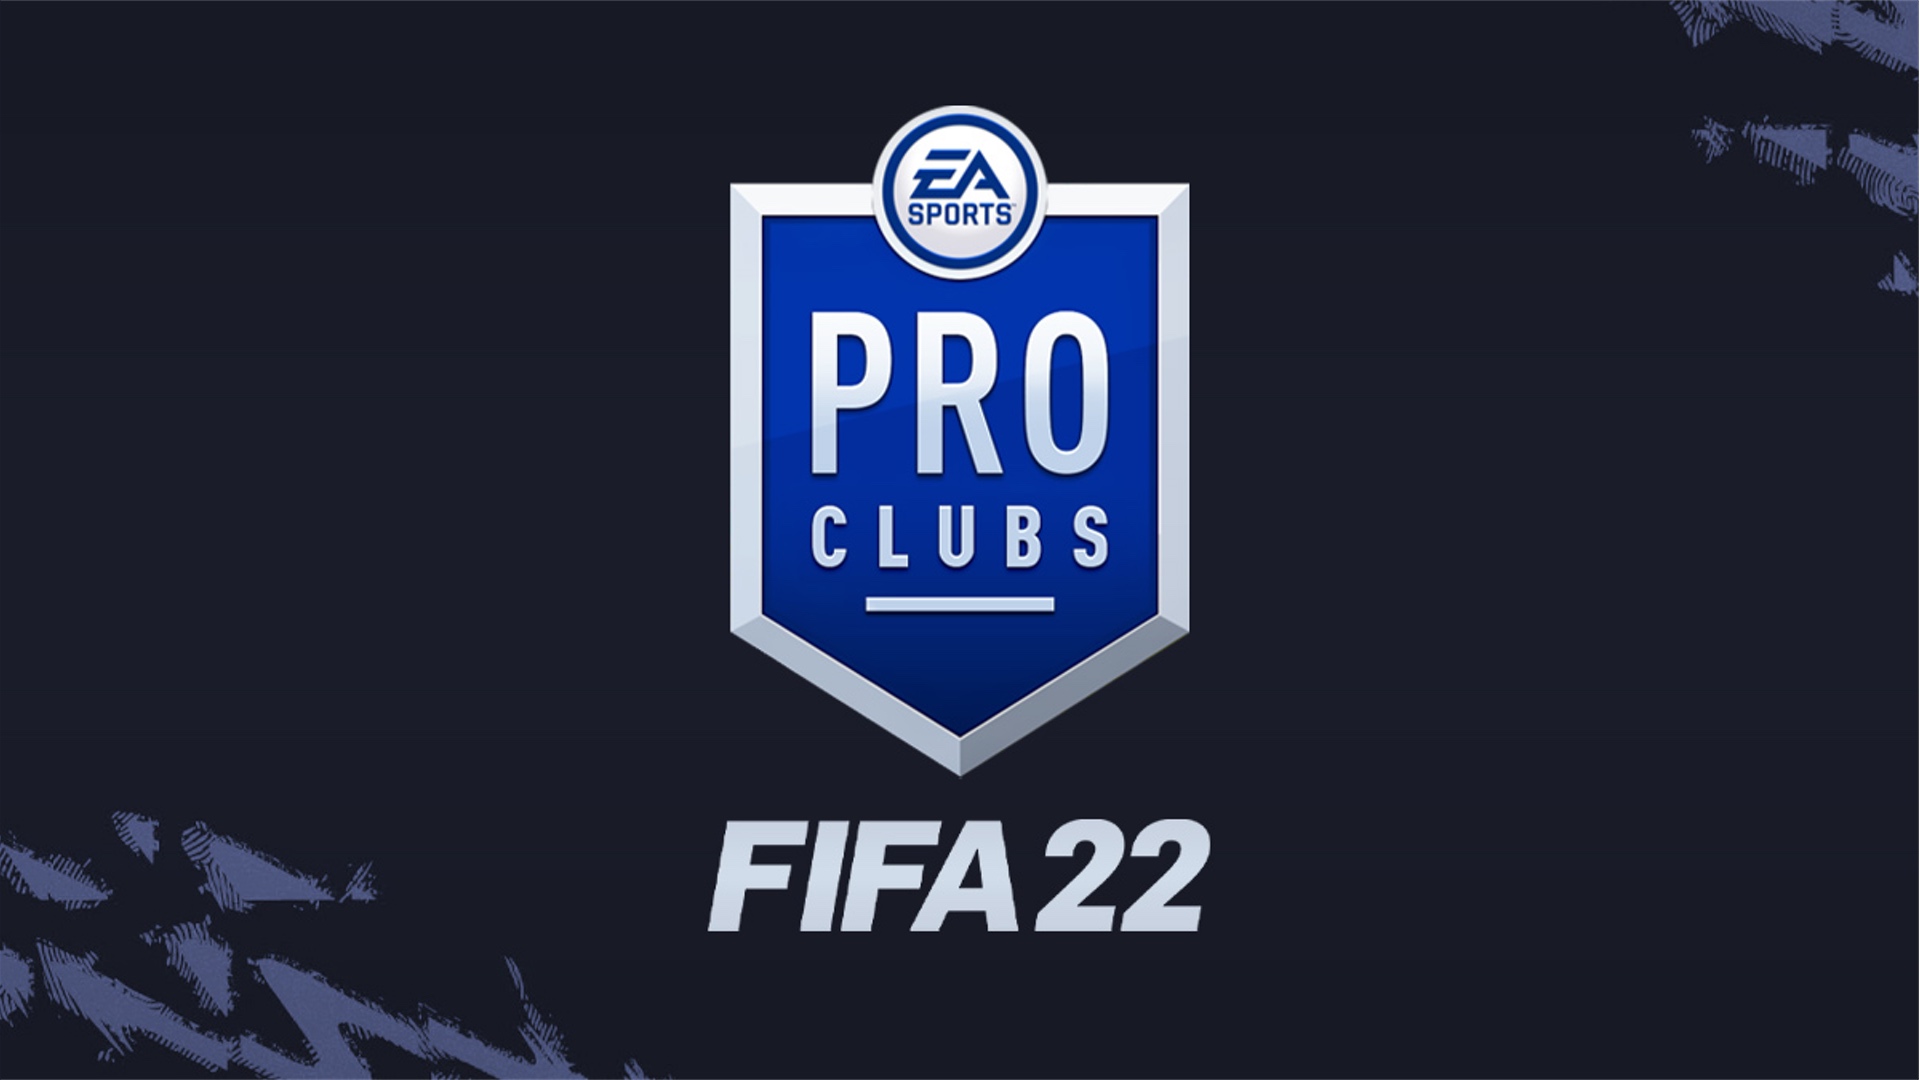 نگاهی به بخش Pro Clubs بازی فیفا 22